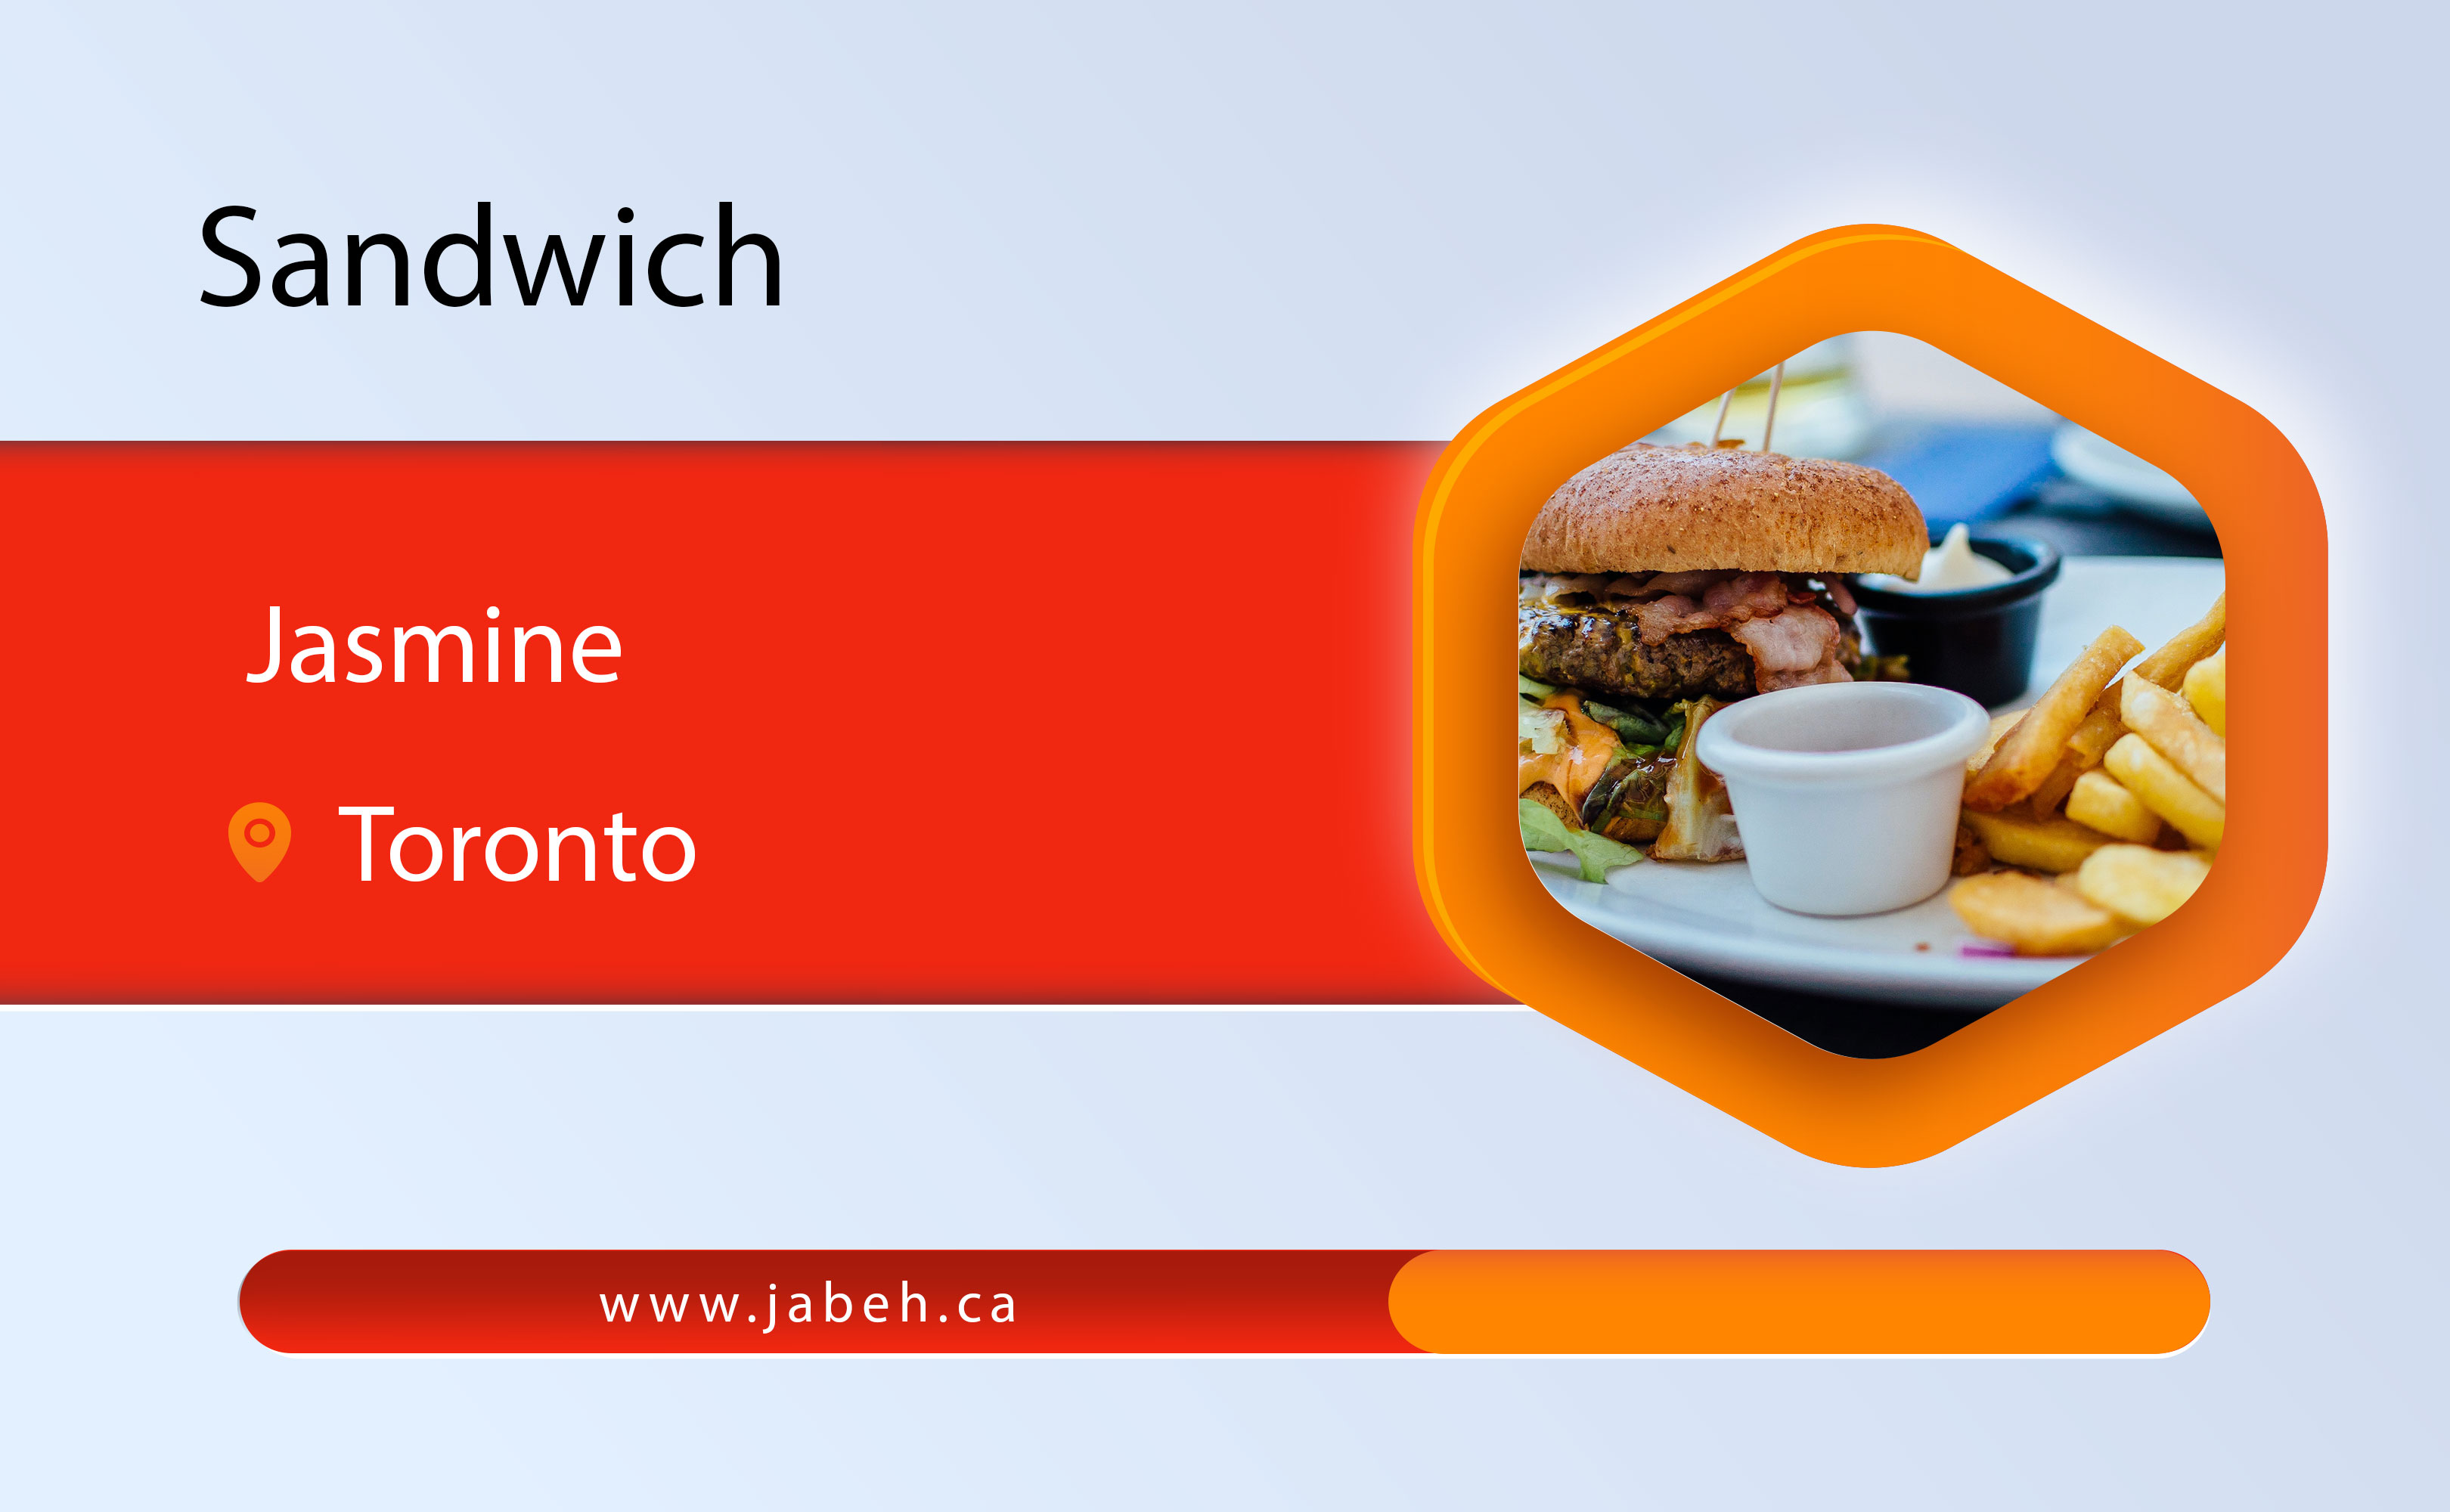 Jasmine Sandwich in Toronto